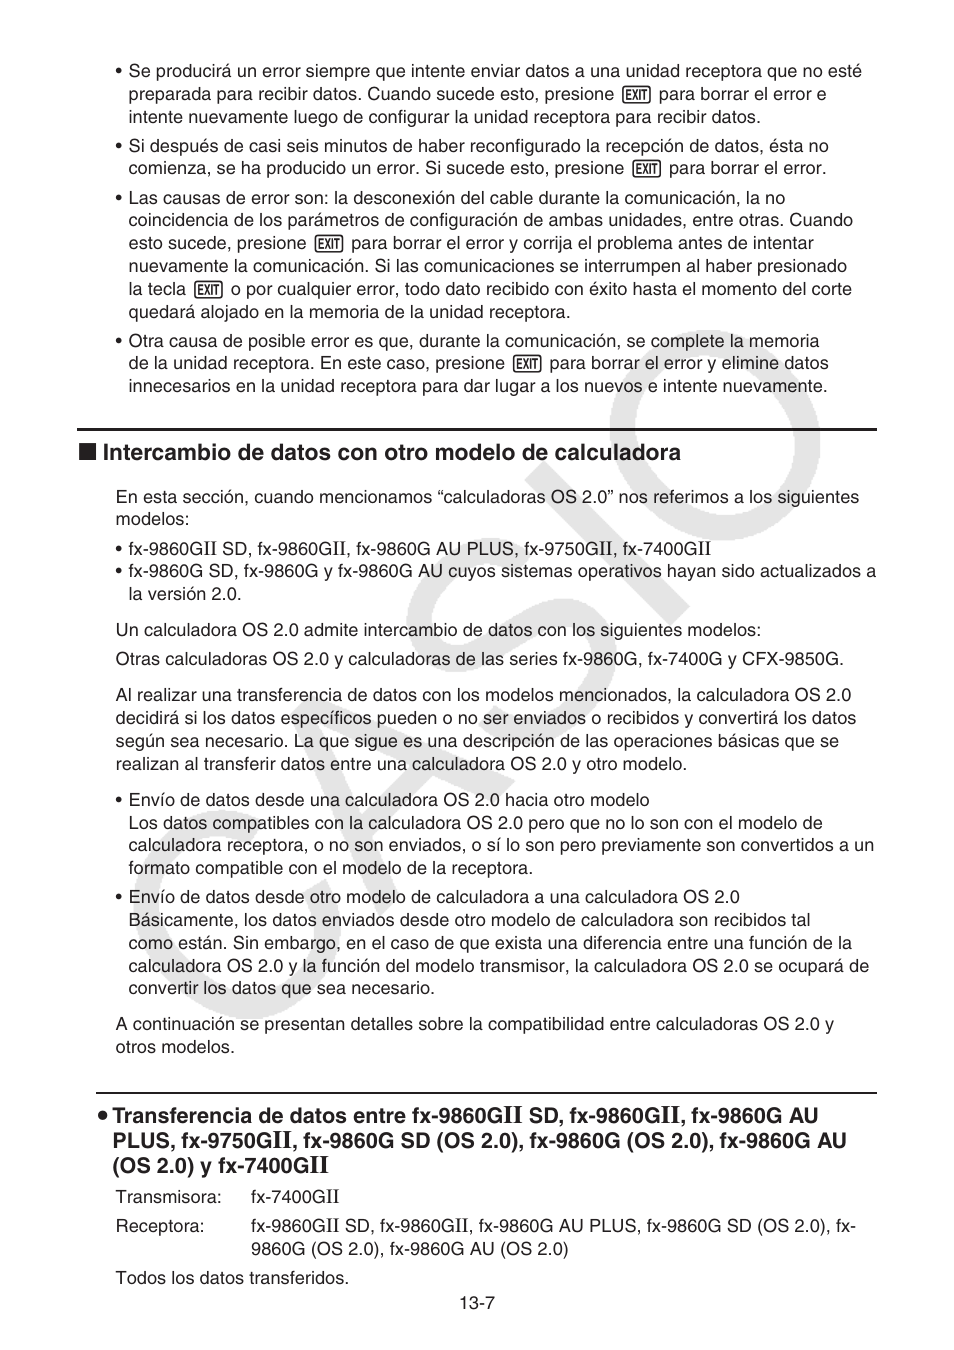 U transferencia de datos entre fx-9860g, Sd, fx-9860g | Casio FX-9750GII  User Manual | Page 318 / 411